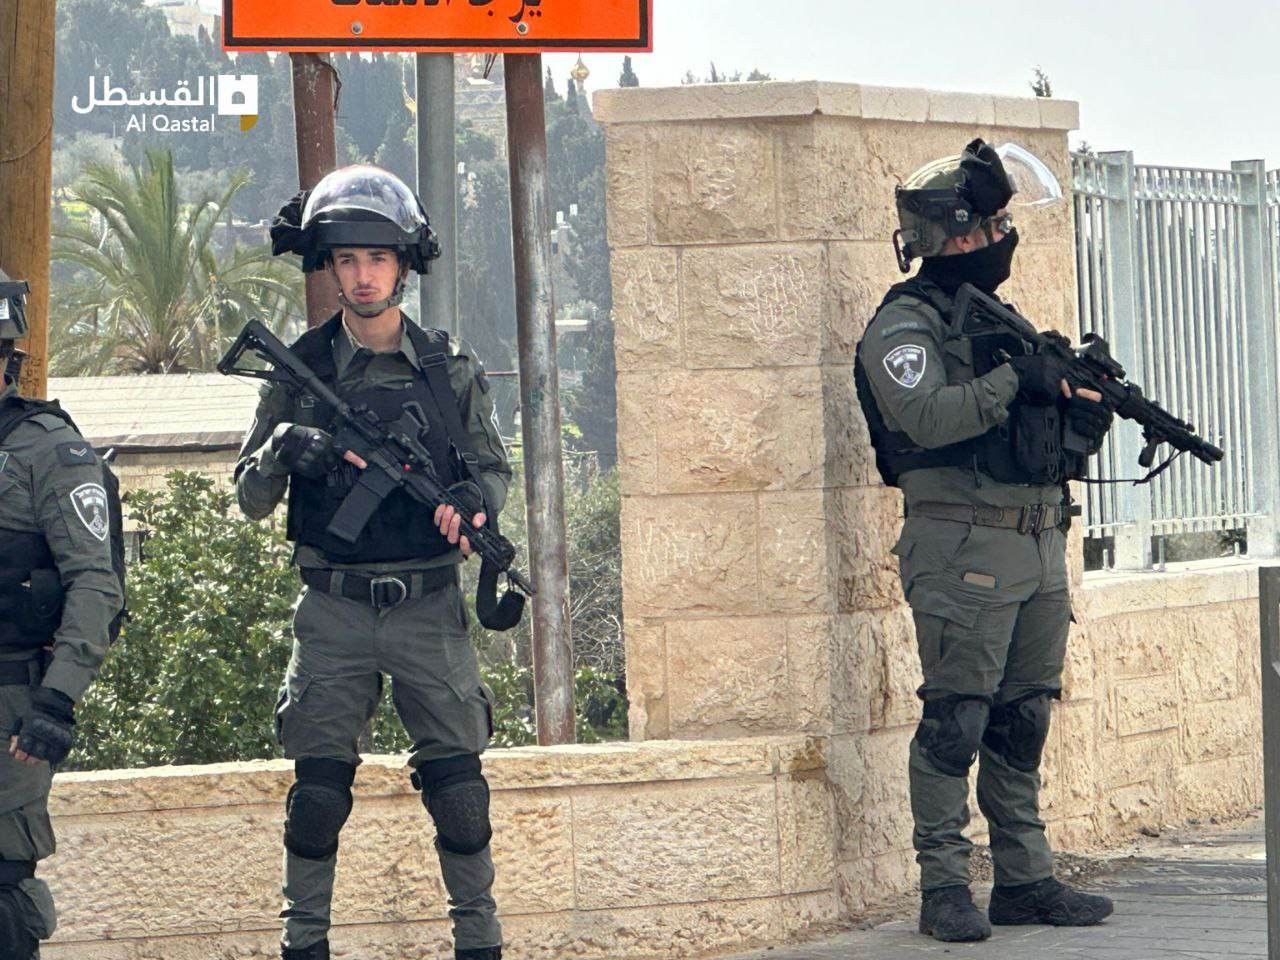 الاحتلال يهدم منازل في القدس المحتلة ويستولي على "كرفانات" في أريحا